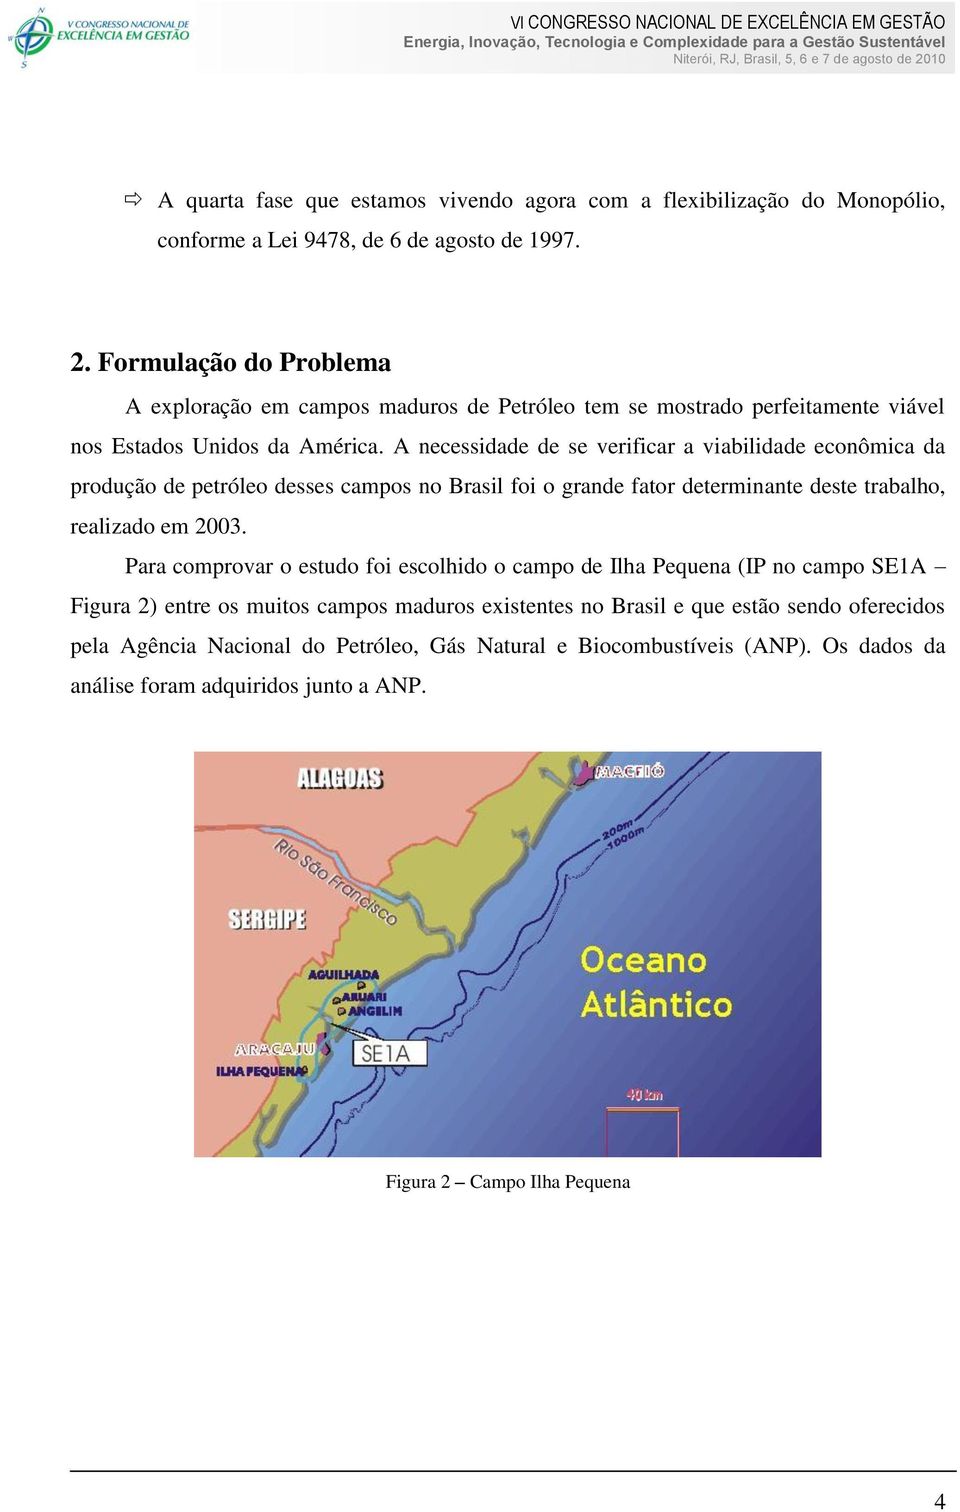 A necessidade de se verificar a viabilidade econômica da produção de petróleo desses campos no Brasil foi o grande fator determinante deste trabalho, realizado em 2003.